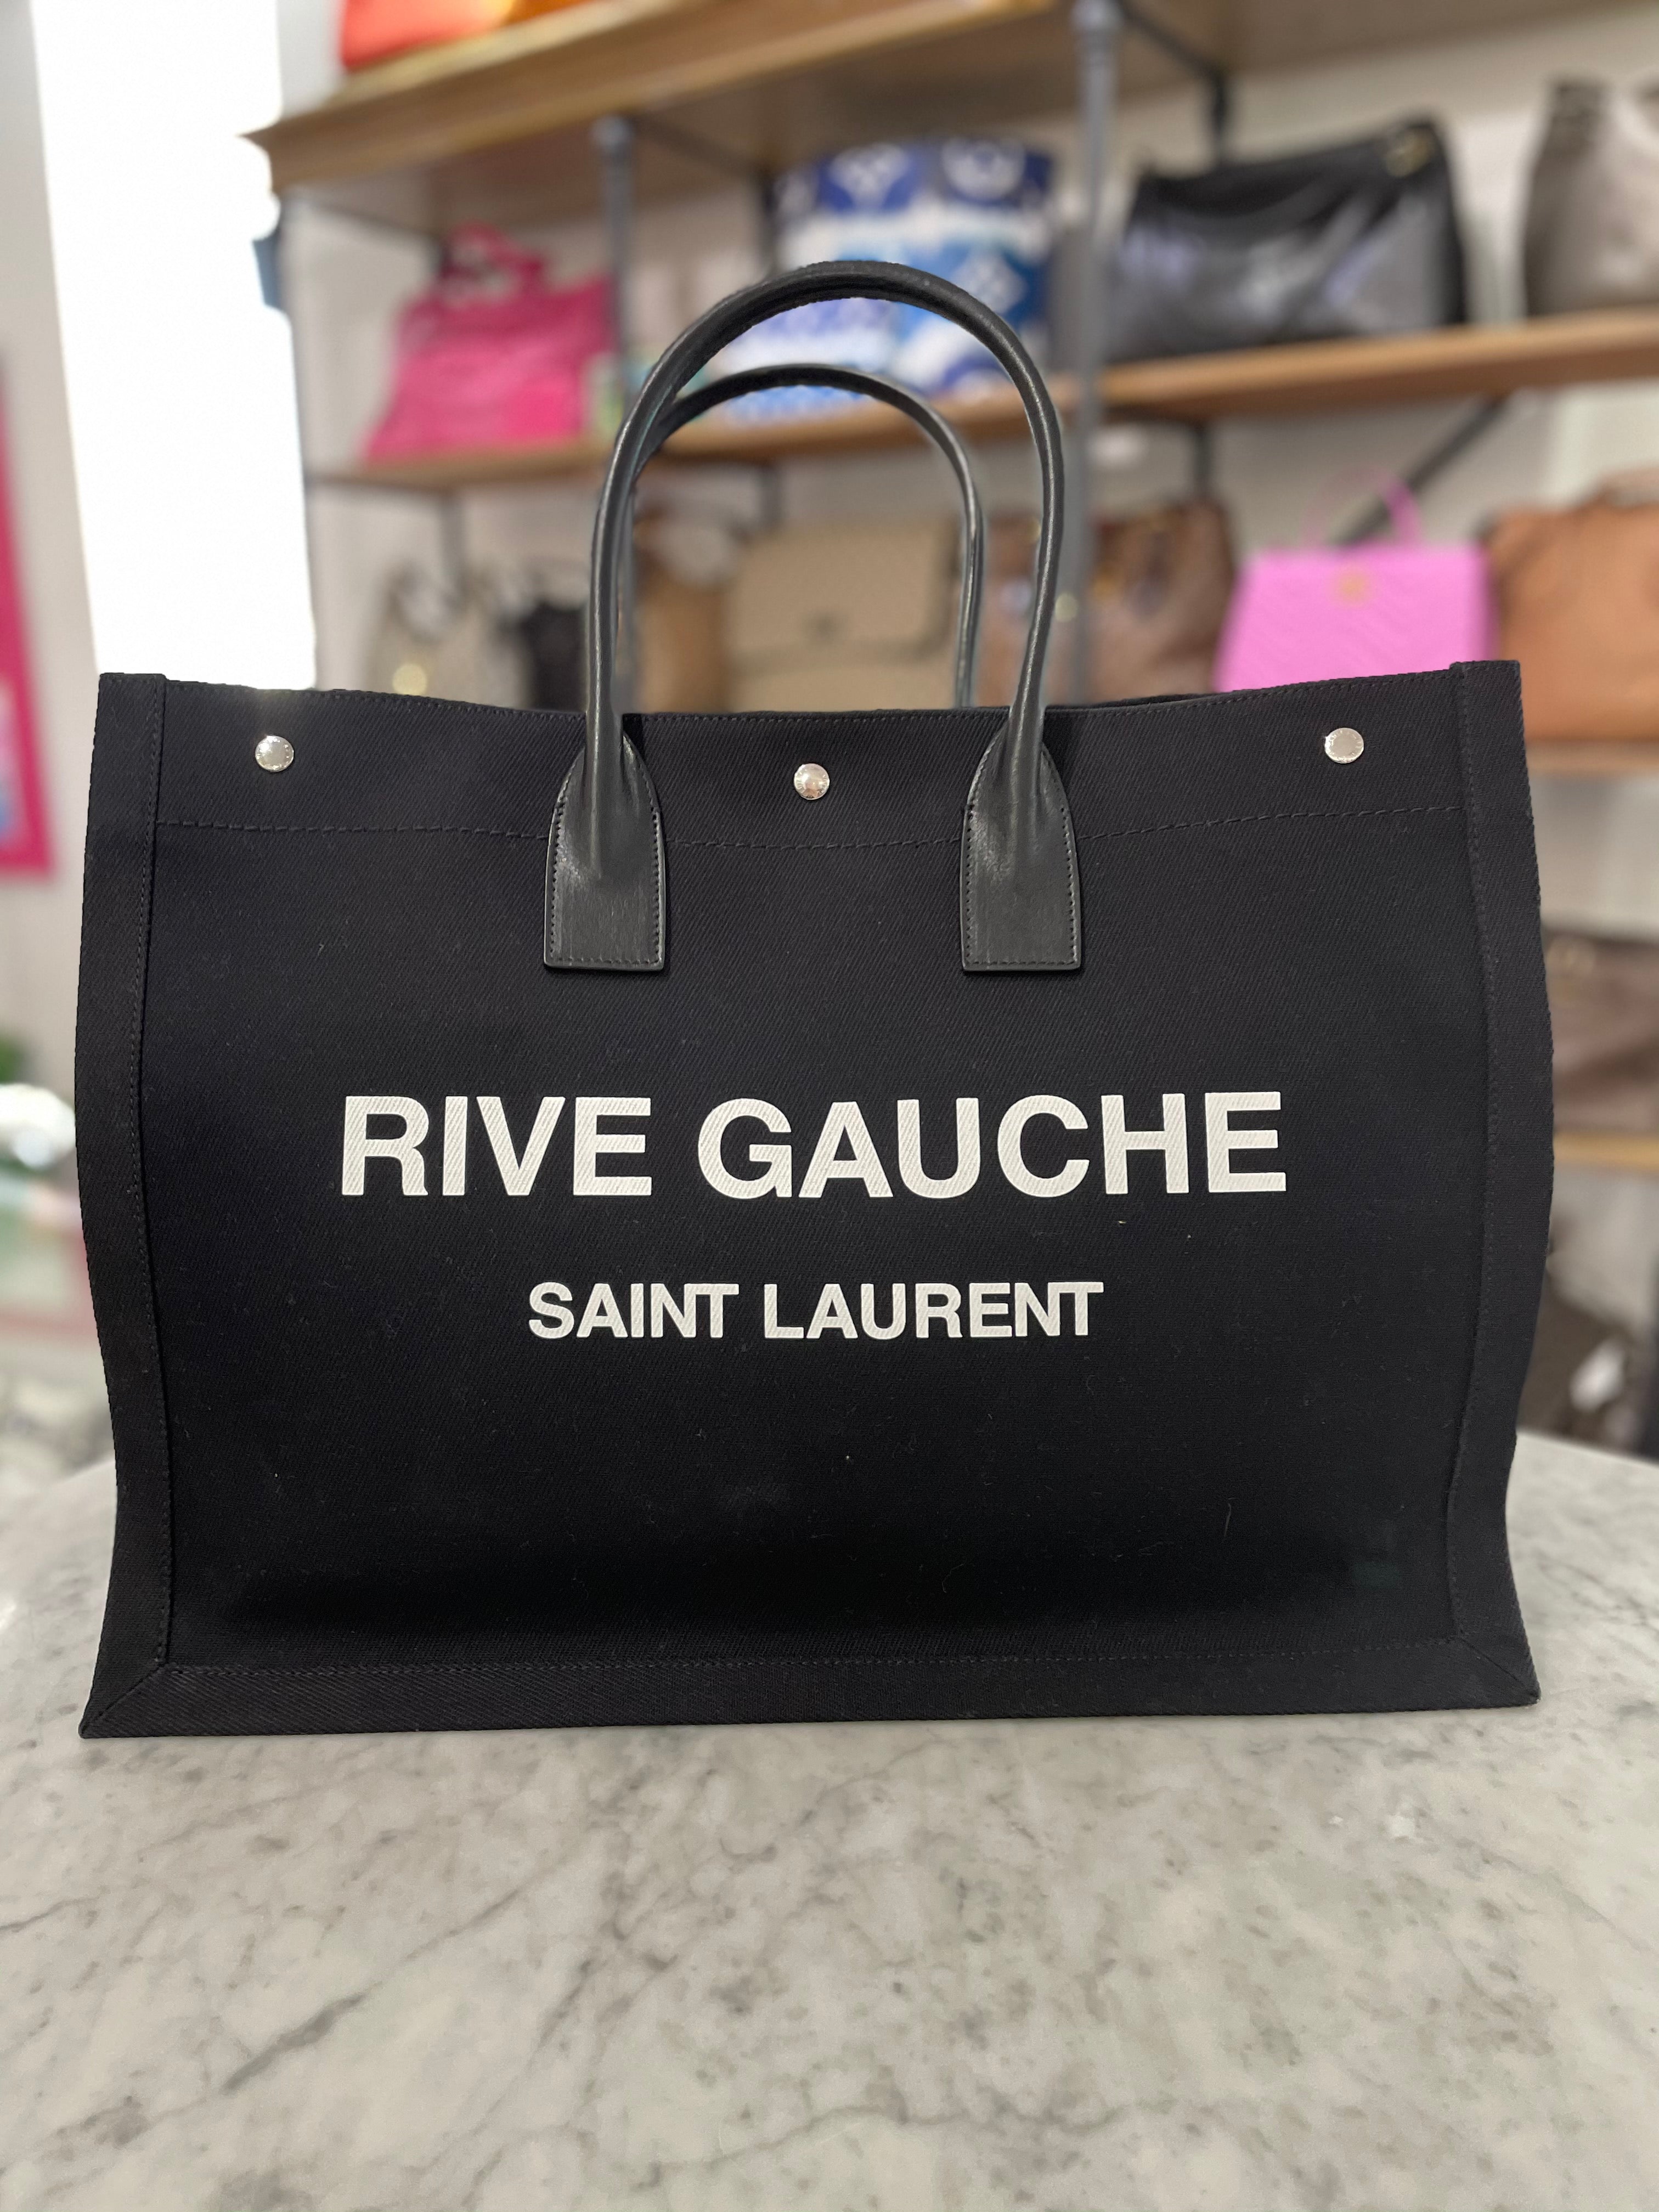 Authentic Saint Laurent Cabas Rive Gauche Tote Bag- YSL